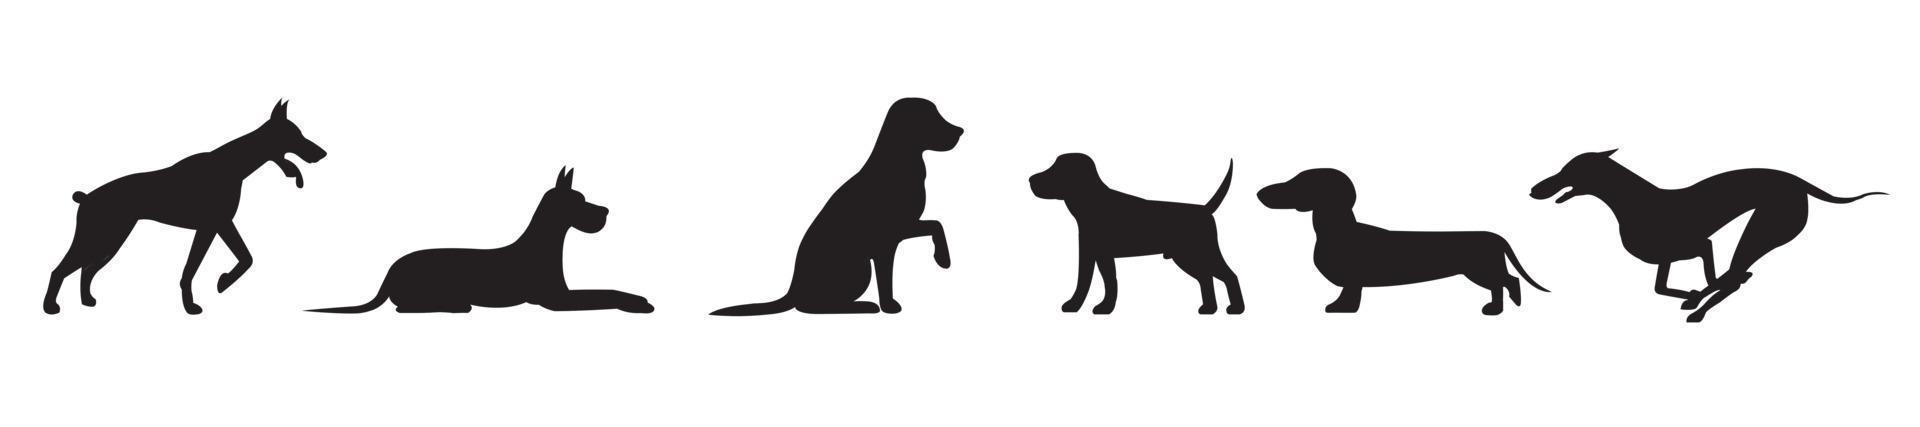 sertie de silhouettes d'un chien dans différentes positions isolées vecteur